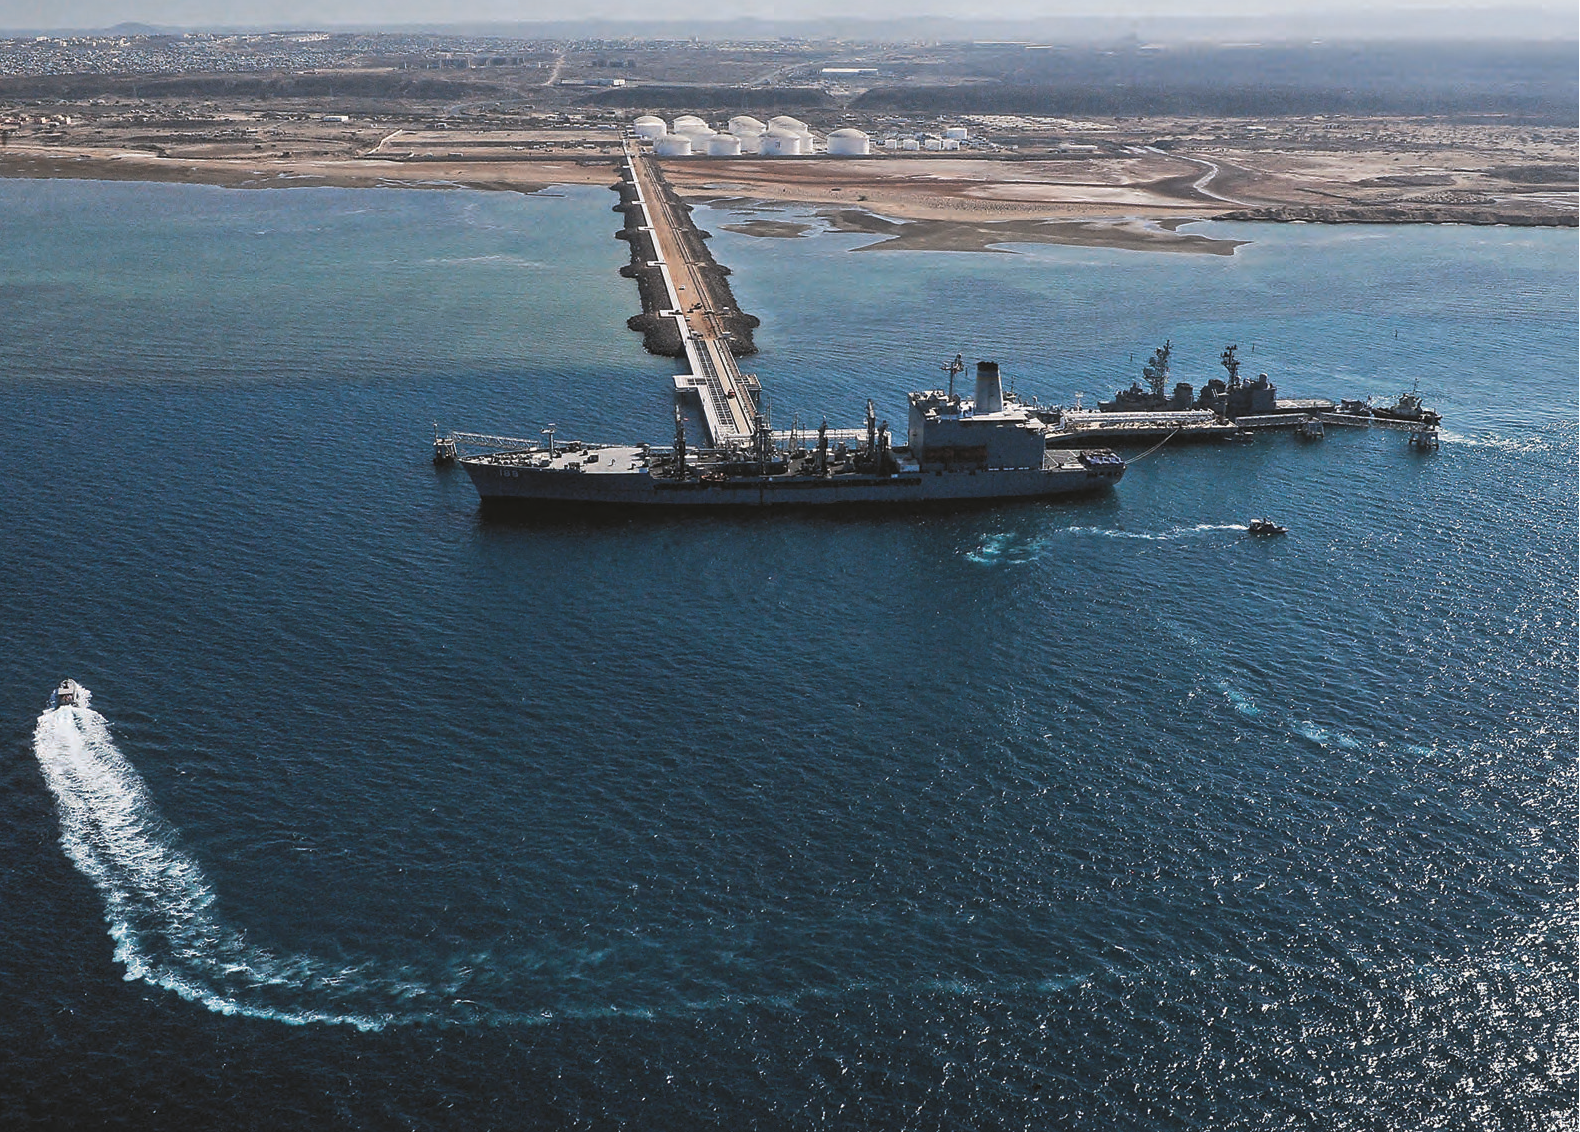 Le système portuaire a été reconnu comme offrant une véritable expertise numérique et logistique par la Banque mondiale. Le complexe pétrolier de Doraleh a notamment la possibilité d’accueillir des navires ayant un tirant d’eau de 20 mètres. VINCENT FOURNIER/JEUNE AFRIQUE